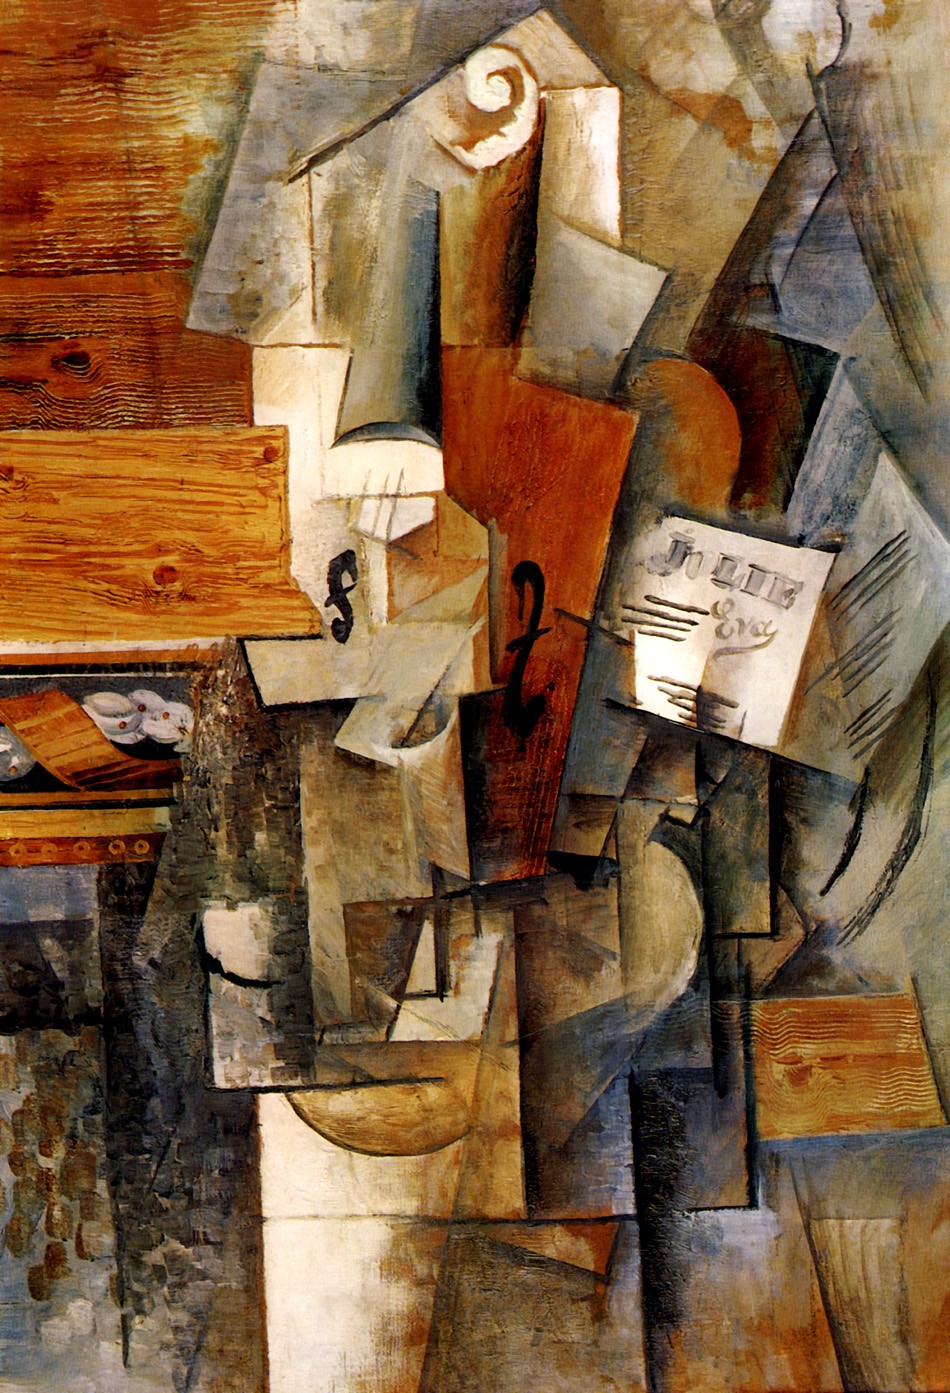 Foto 1 - Guitarra Violão Bandolin Musica Moderna Arte Cubismo Pintura de Pablo Picasso em TELA